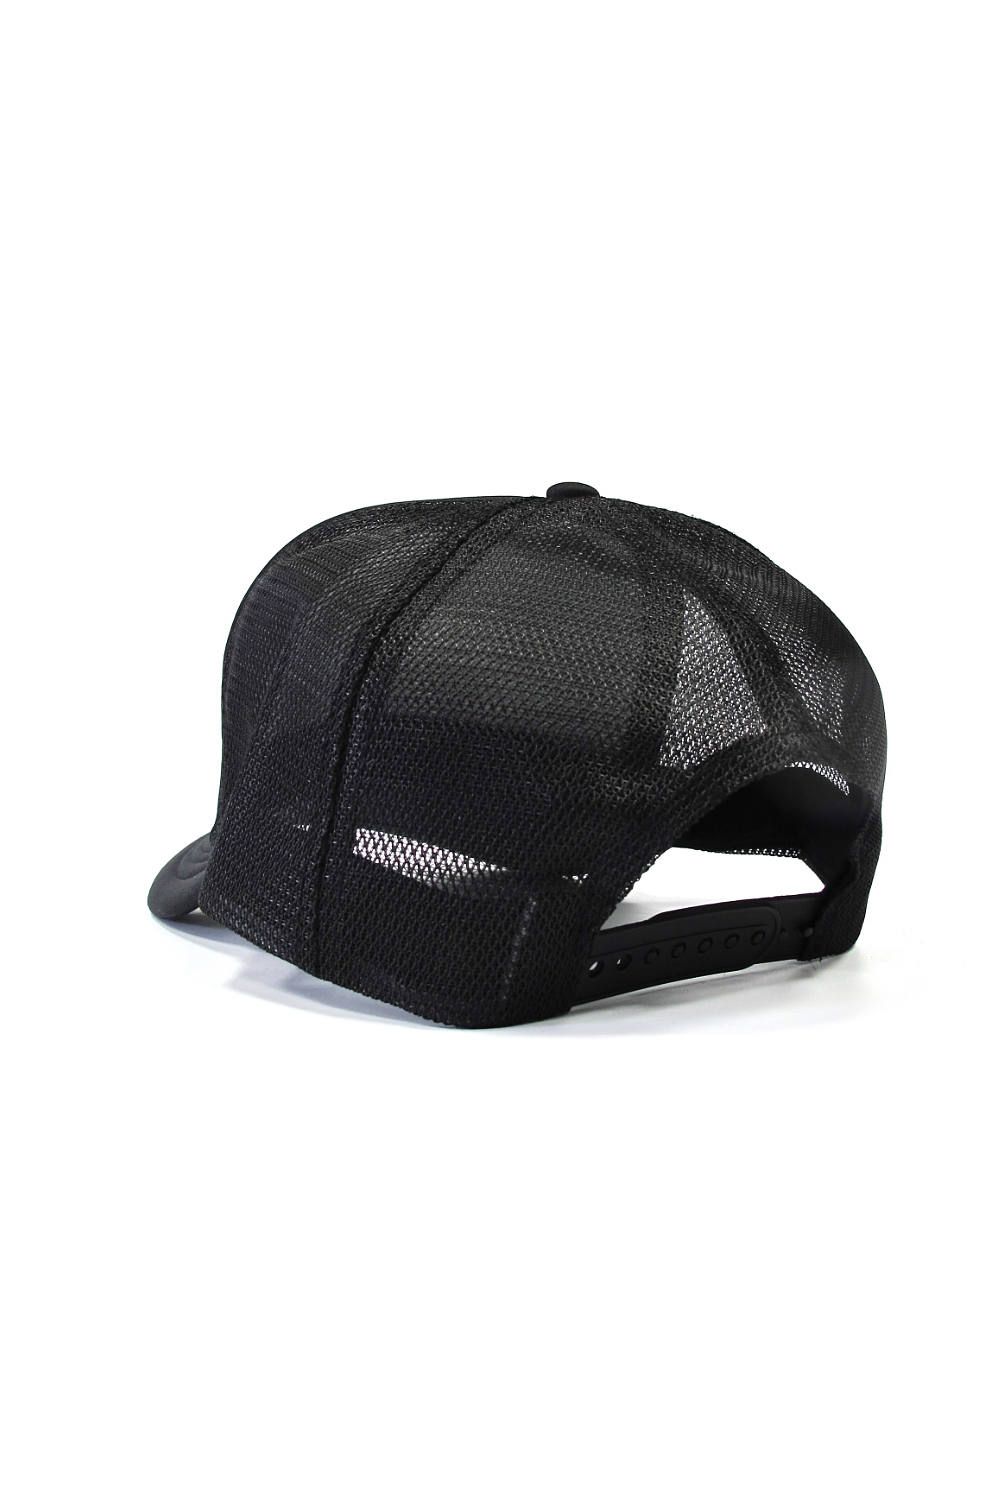 PRINT MESH CAP (BLACK) / プリントメッシュキャップ - フリーサイズ